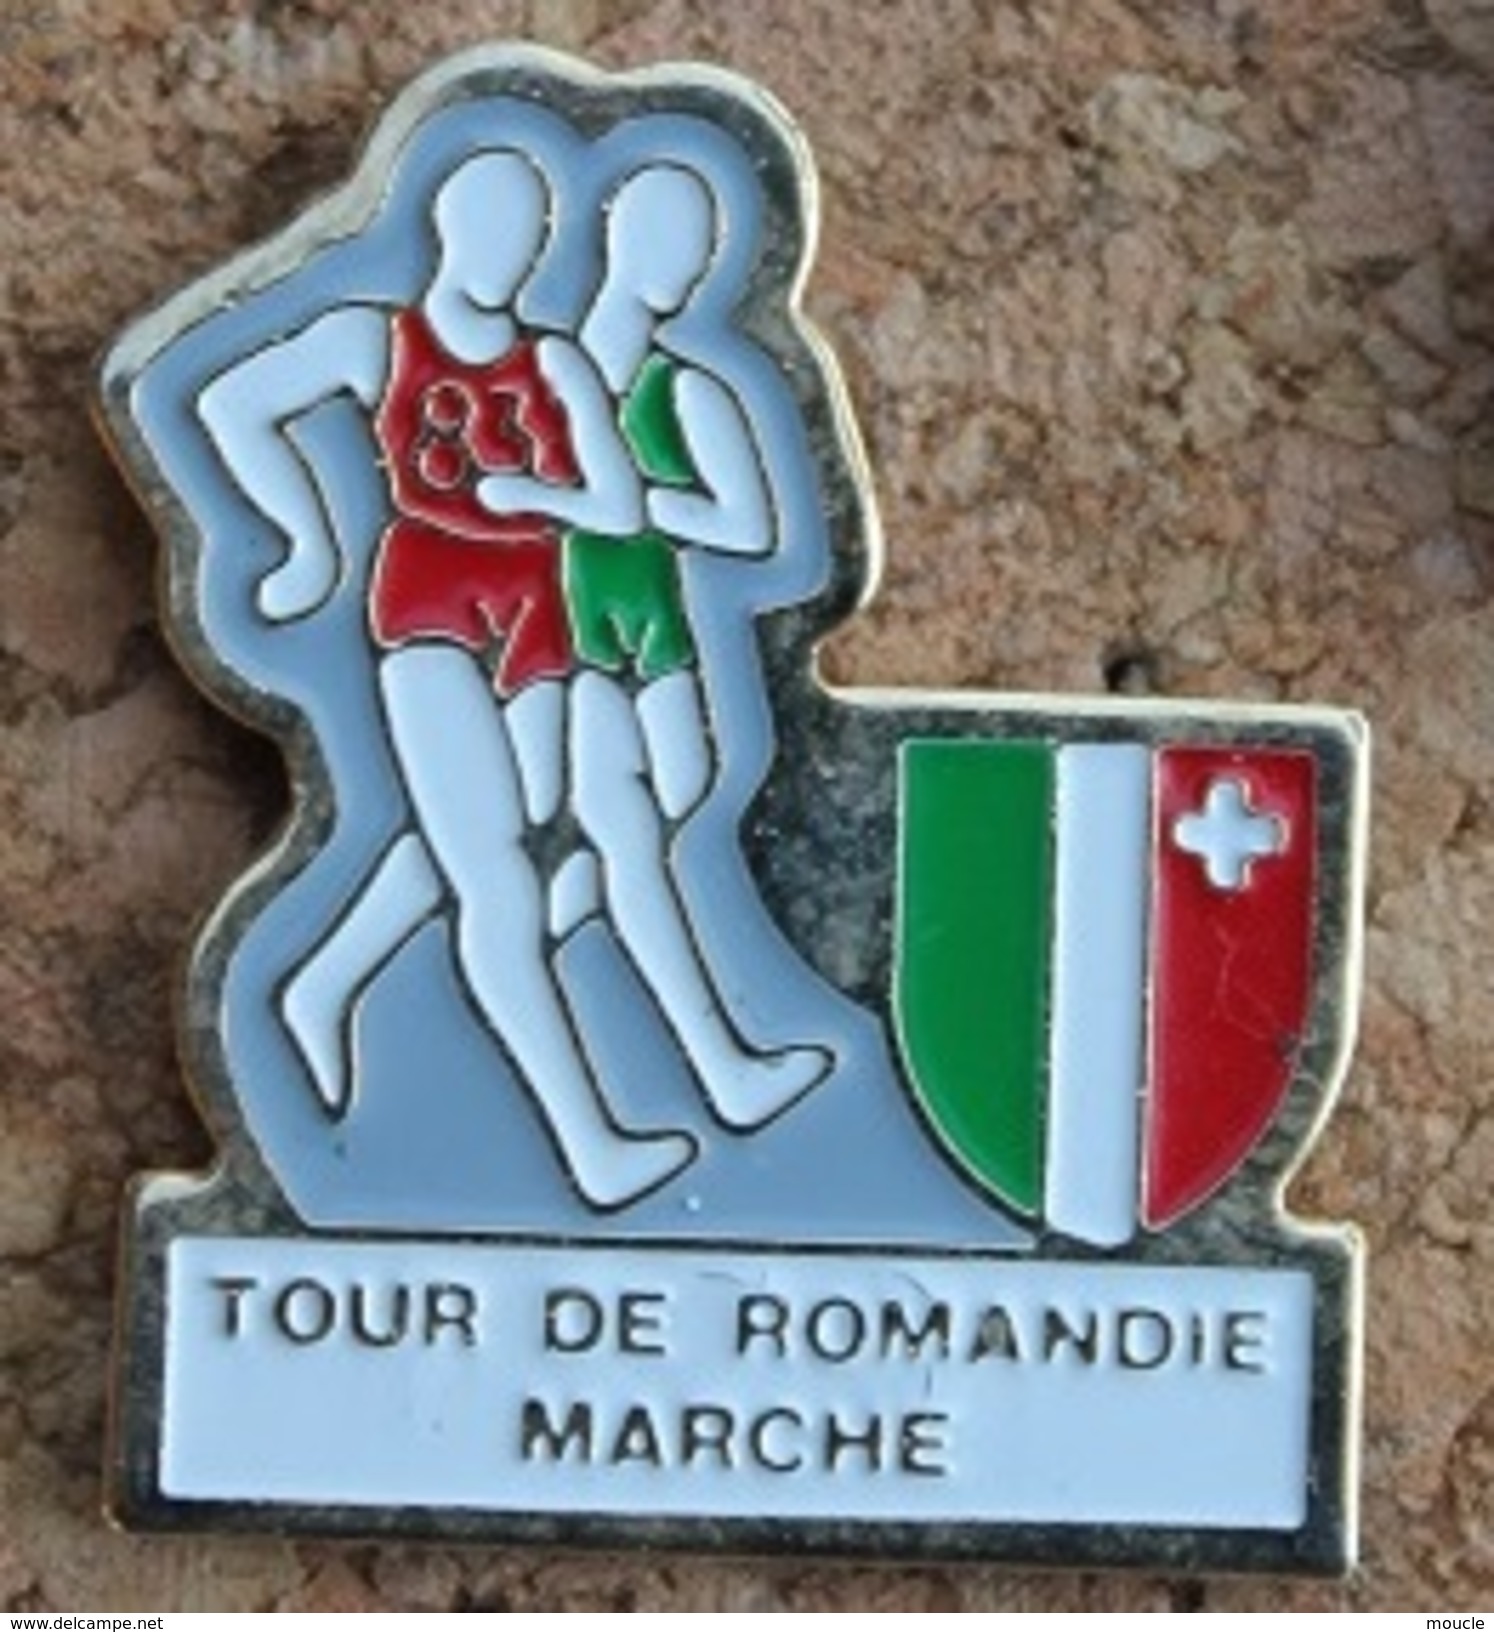 TOUR DE ROMANDIE A LA MARCHE - SUISSE - ETAPE DU CANTON DE NEUCHÂTEL - MARCHEURS - SCHWEIZ - SVIZZERA - SUIZA  -  (13) - Athlétisme